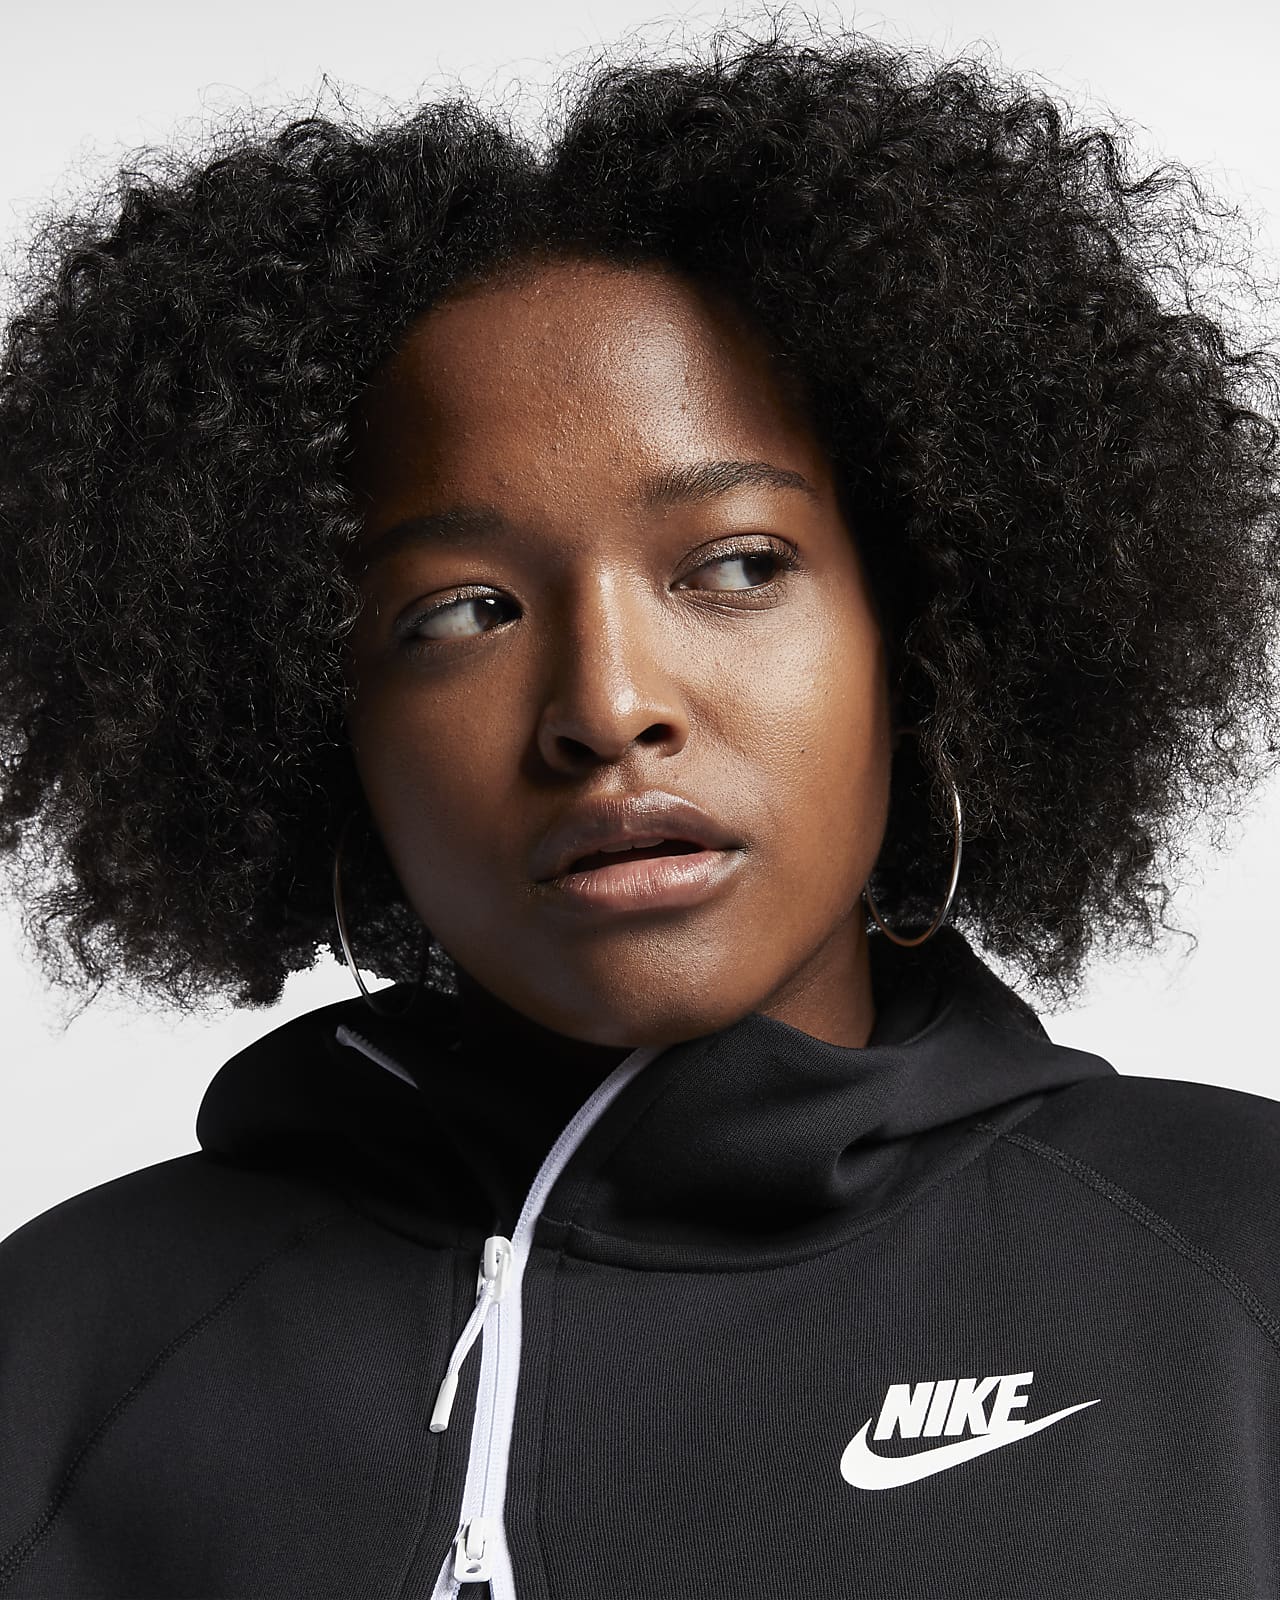 Nike Tech Fleece Full-Zip CAPE Hoodie Women's Size S M L XL